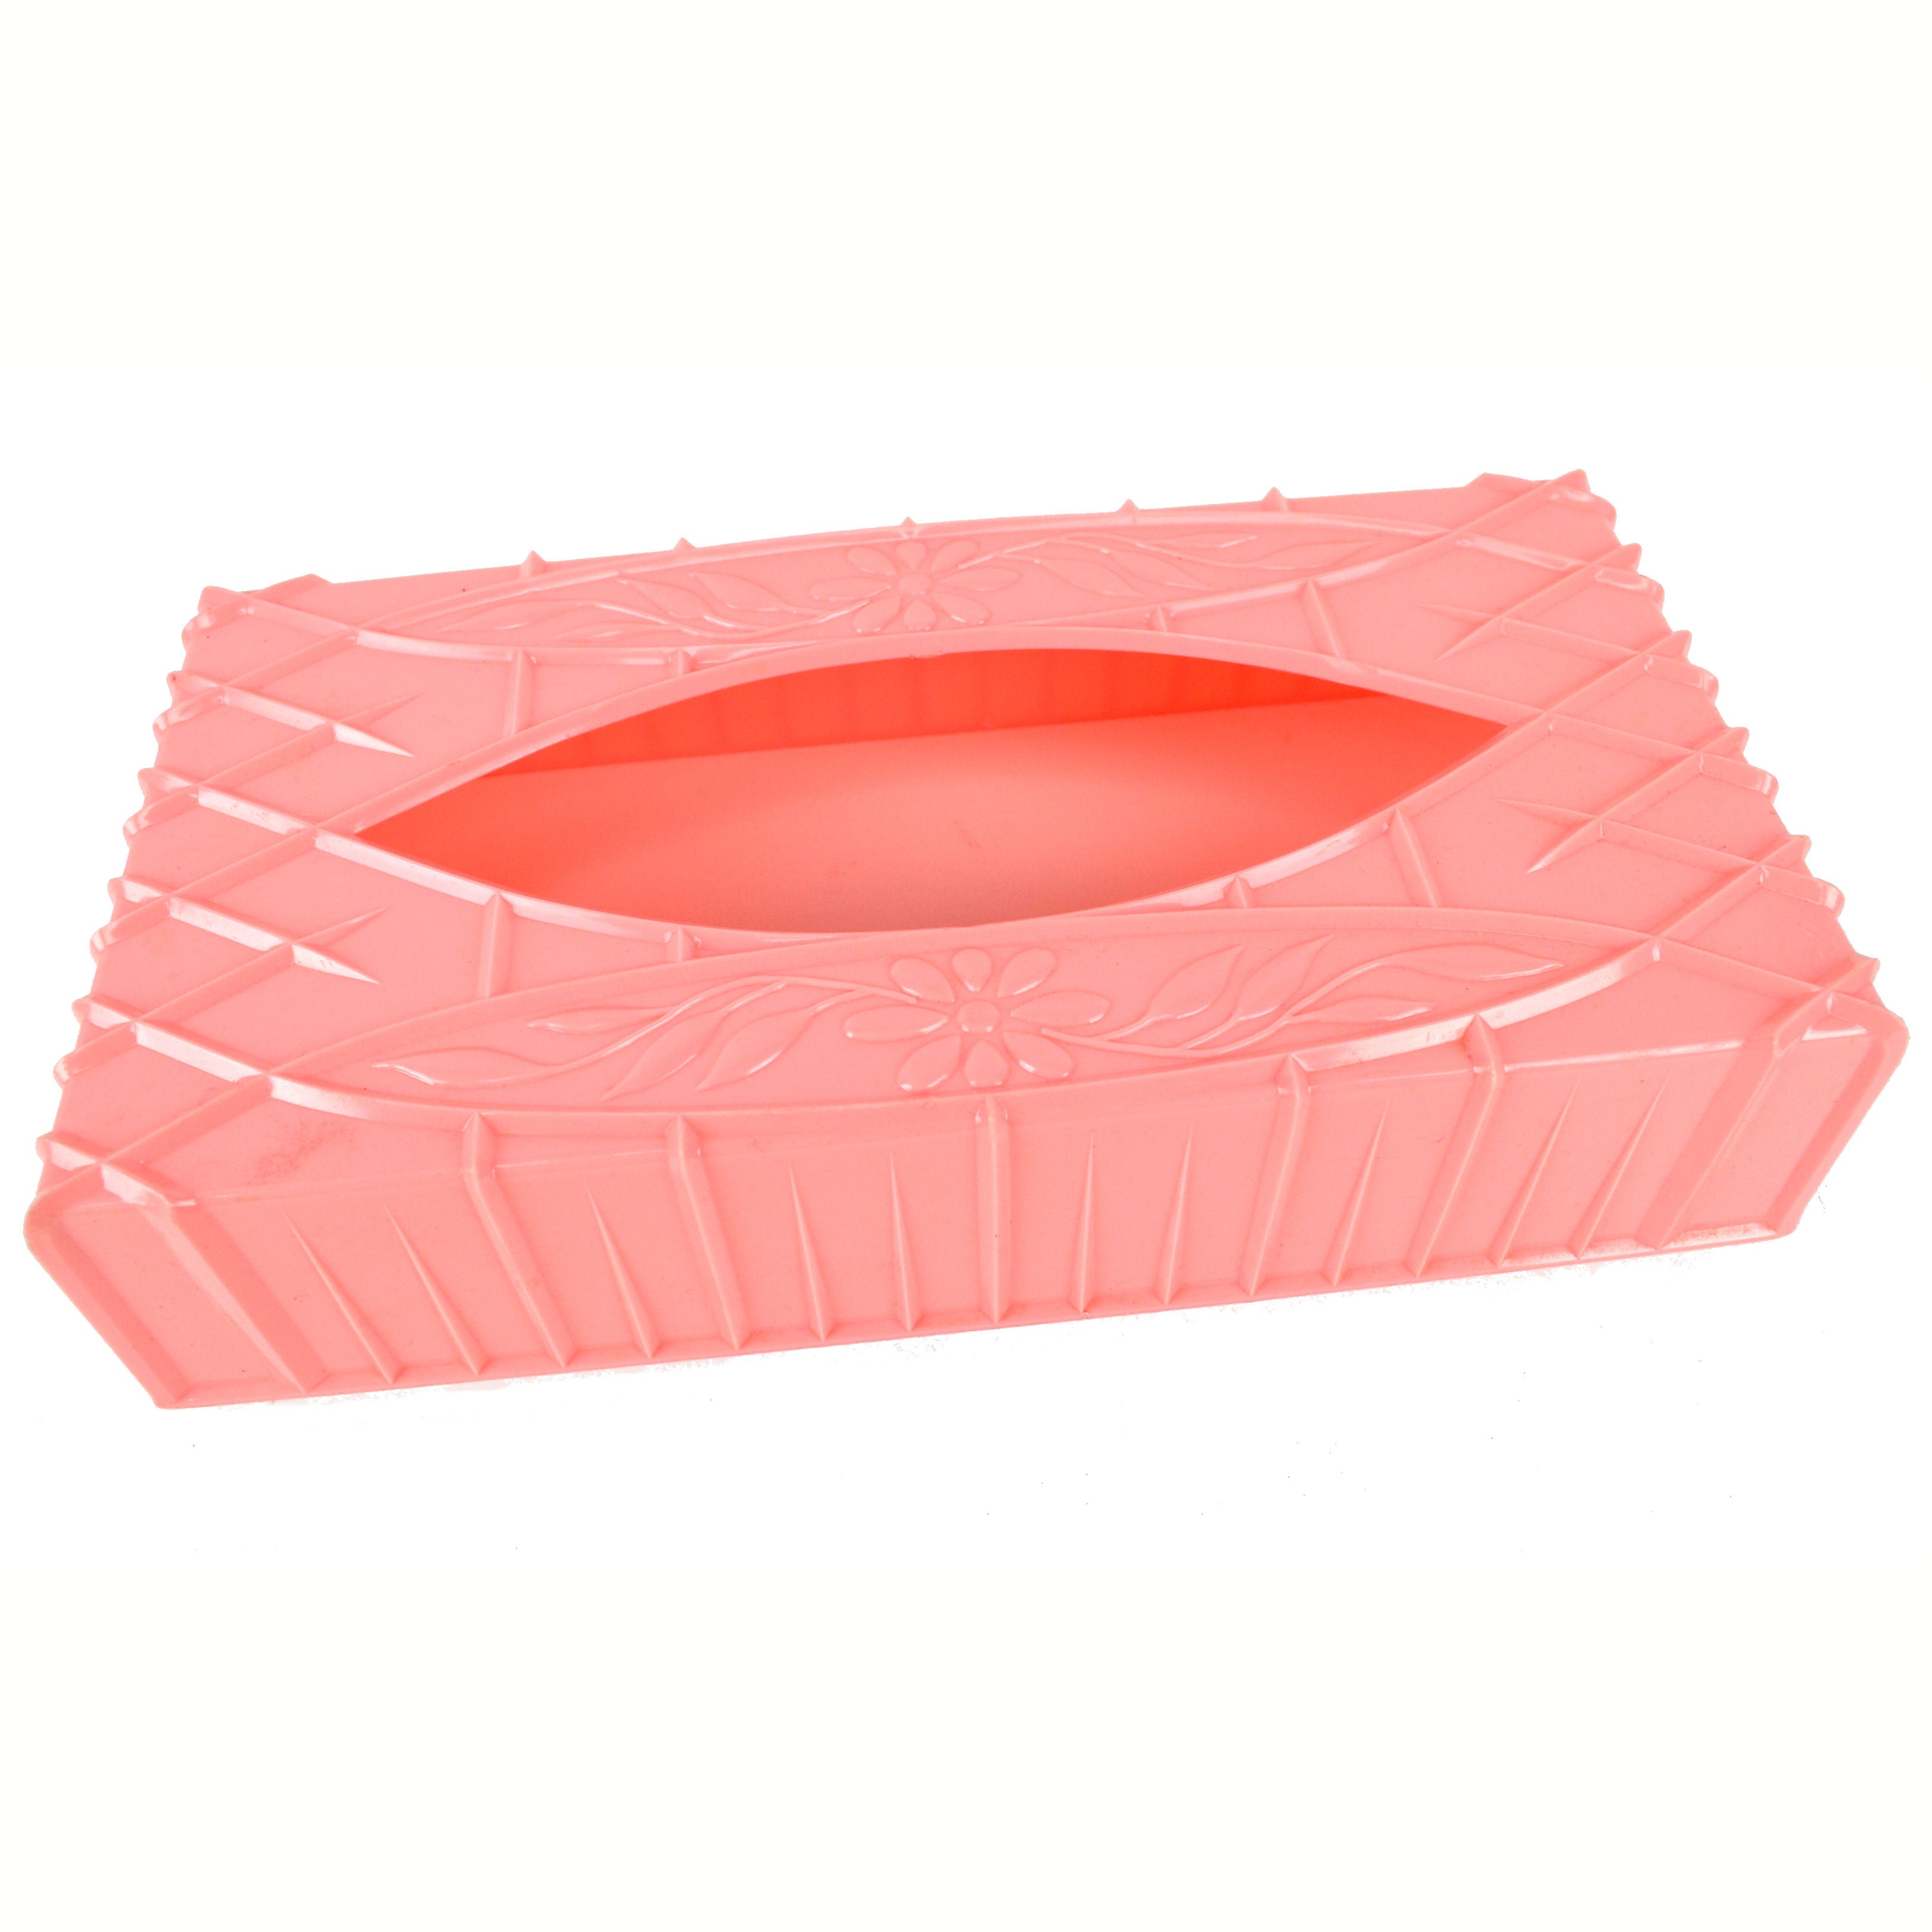 pink tissue holder